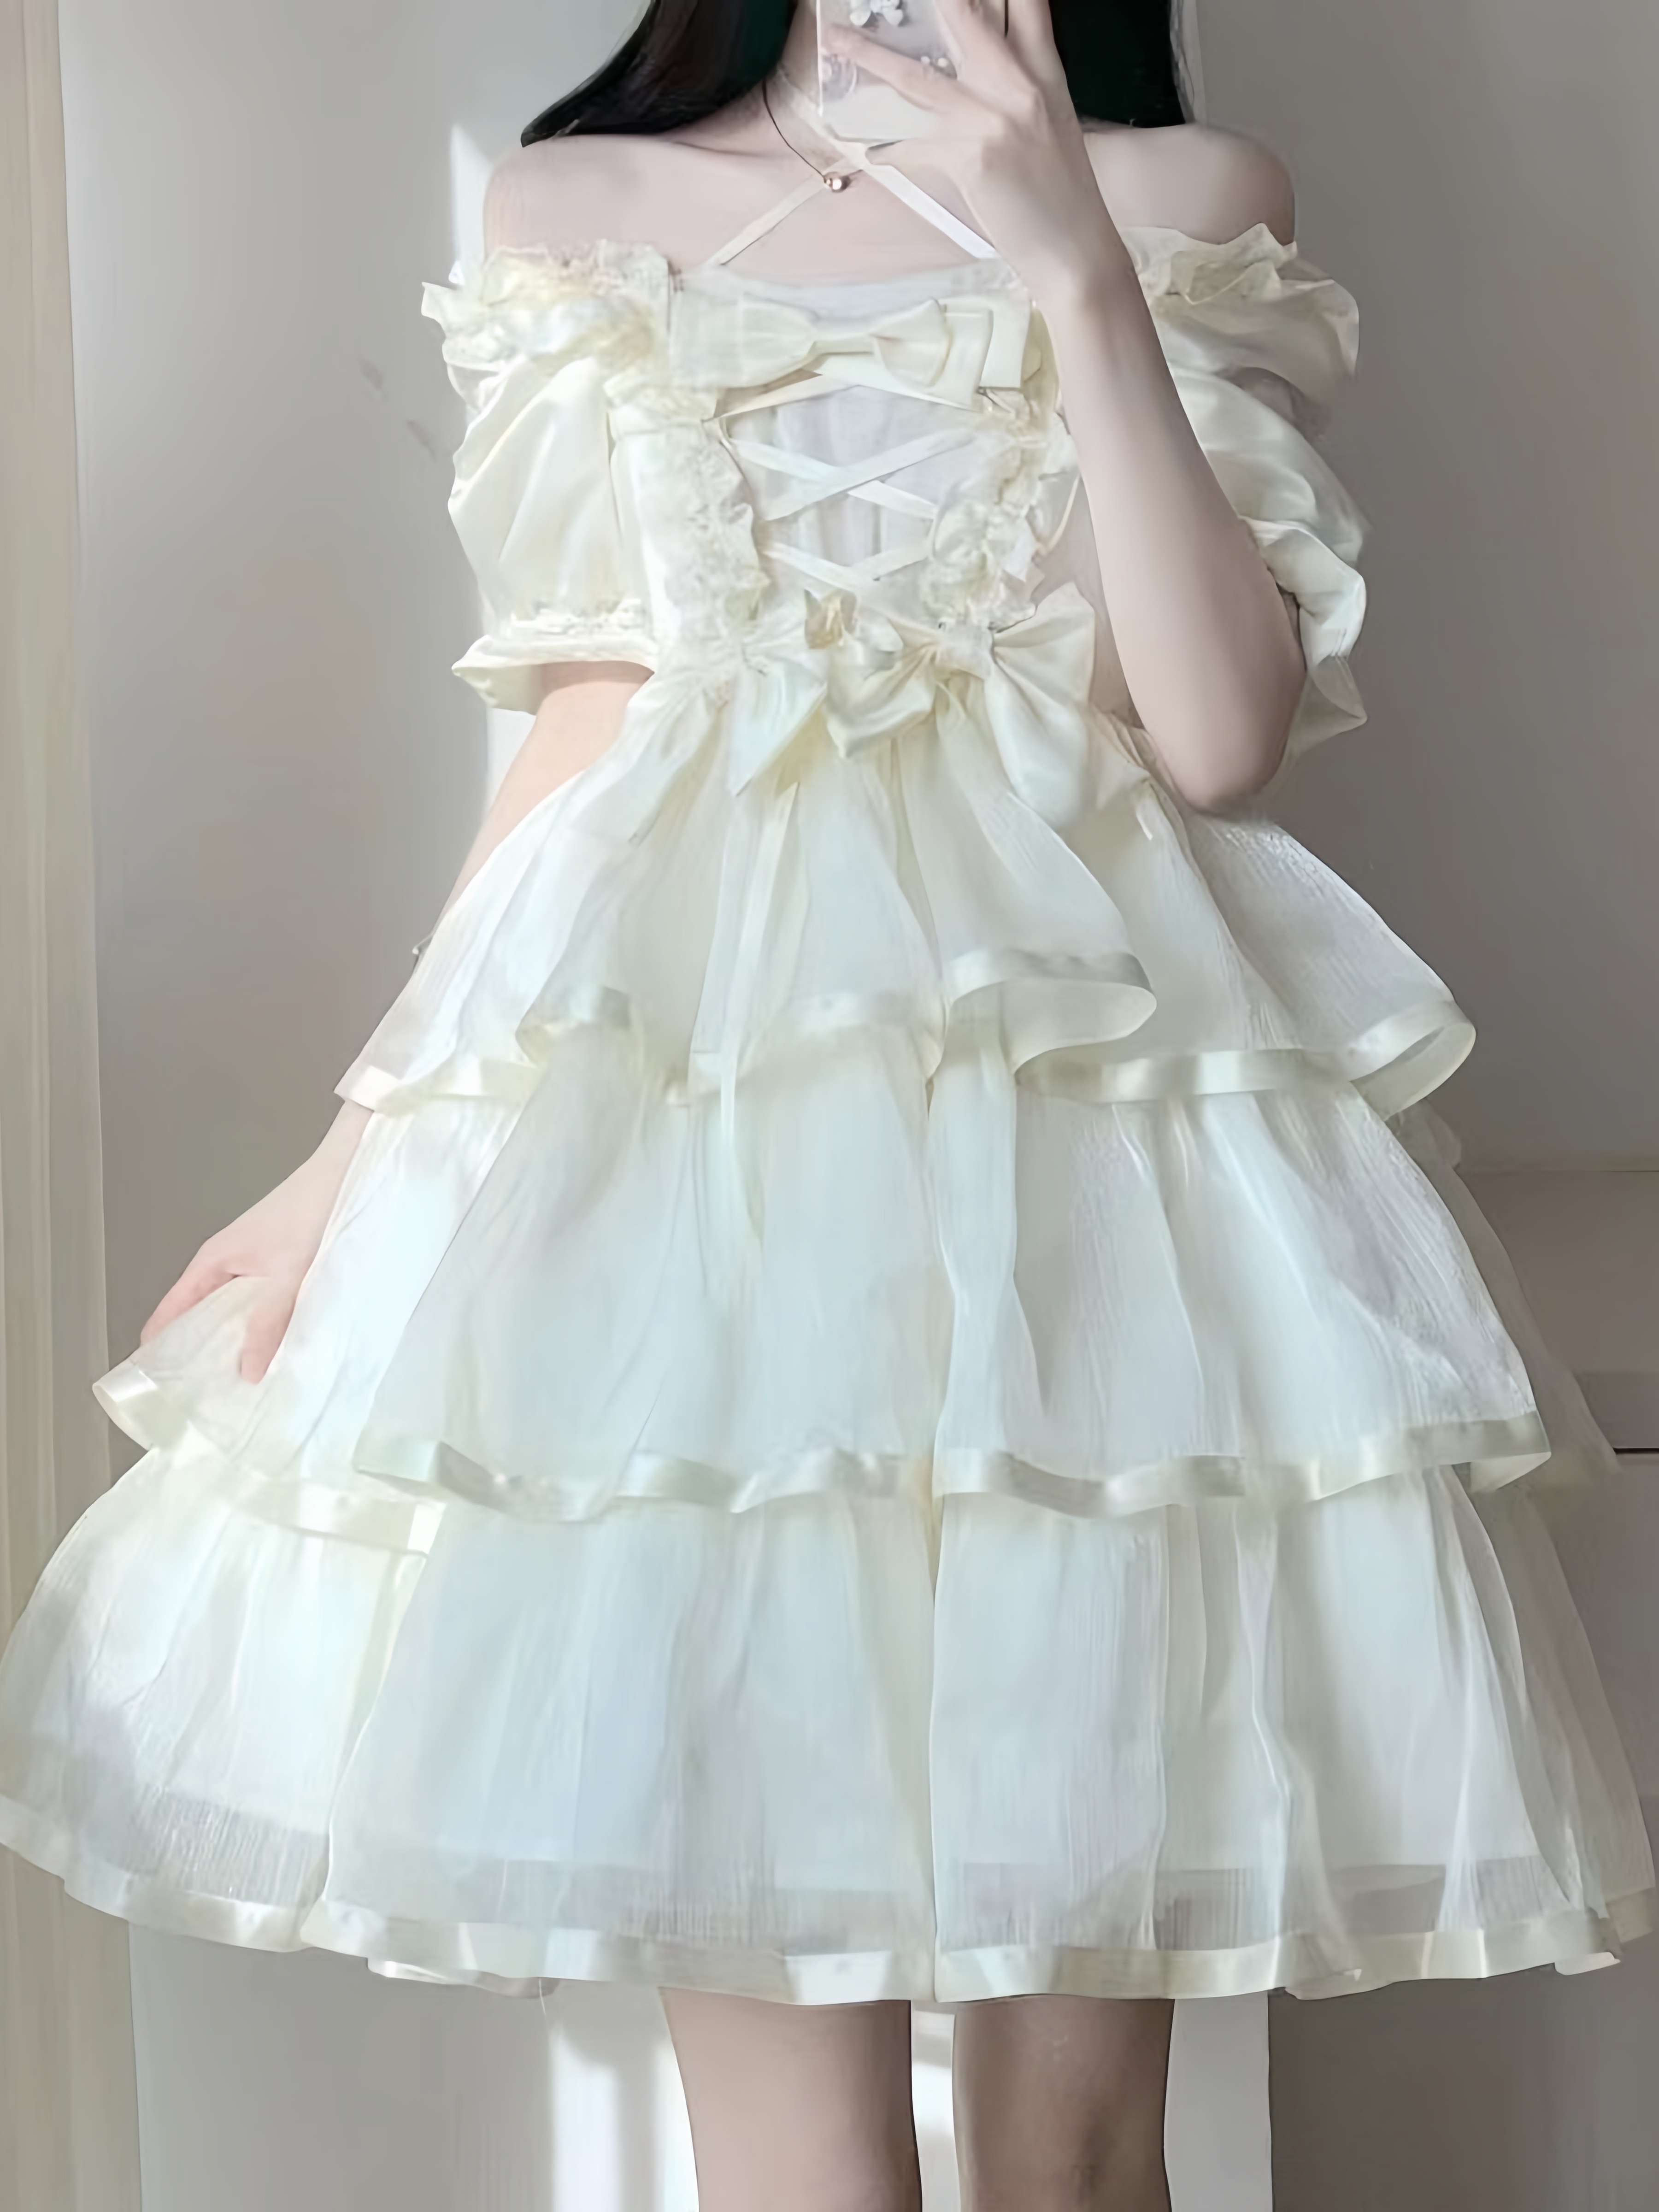 月光少女オリジナルデザイン本物妖精三段ロリータミルクケーキドレス豪華誕生日プレゼント